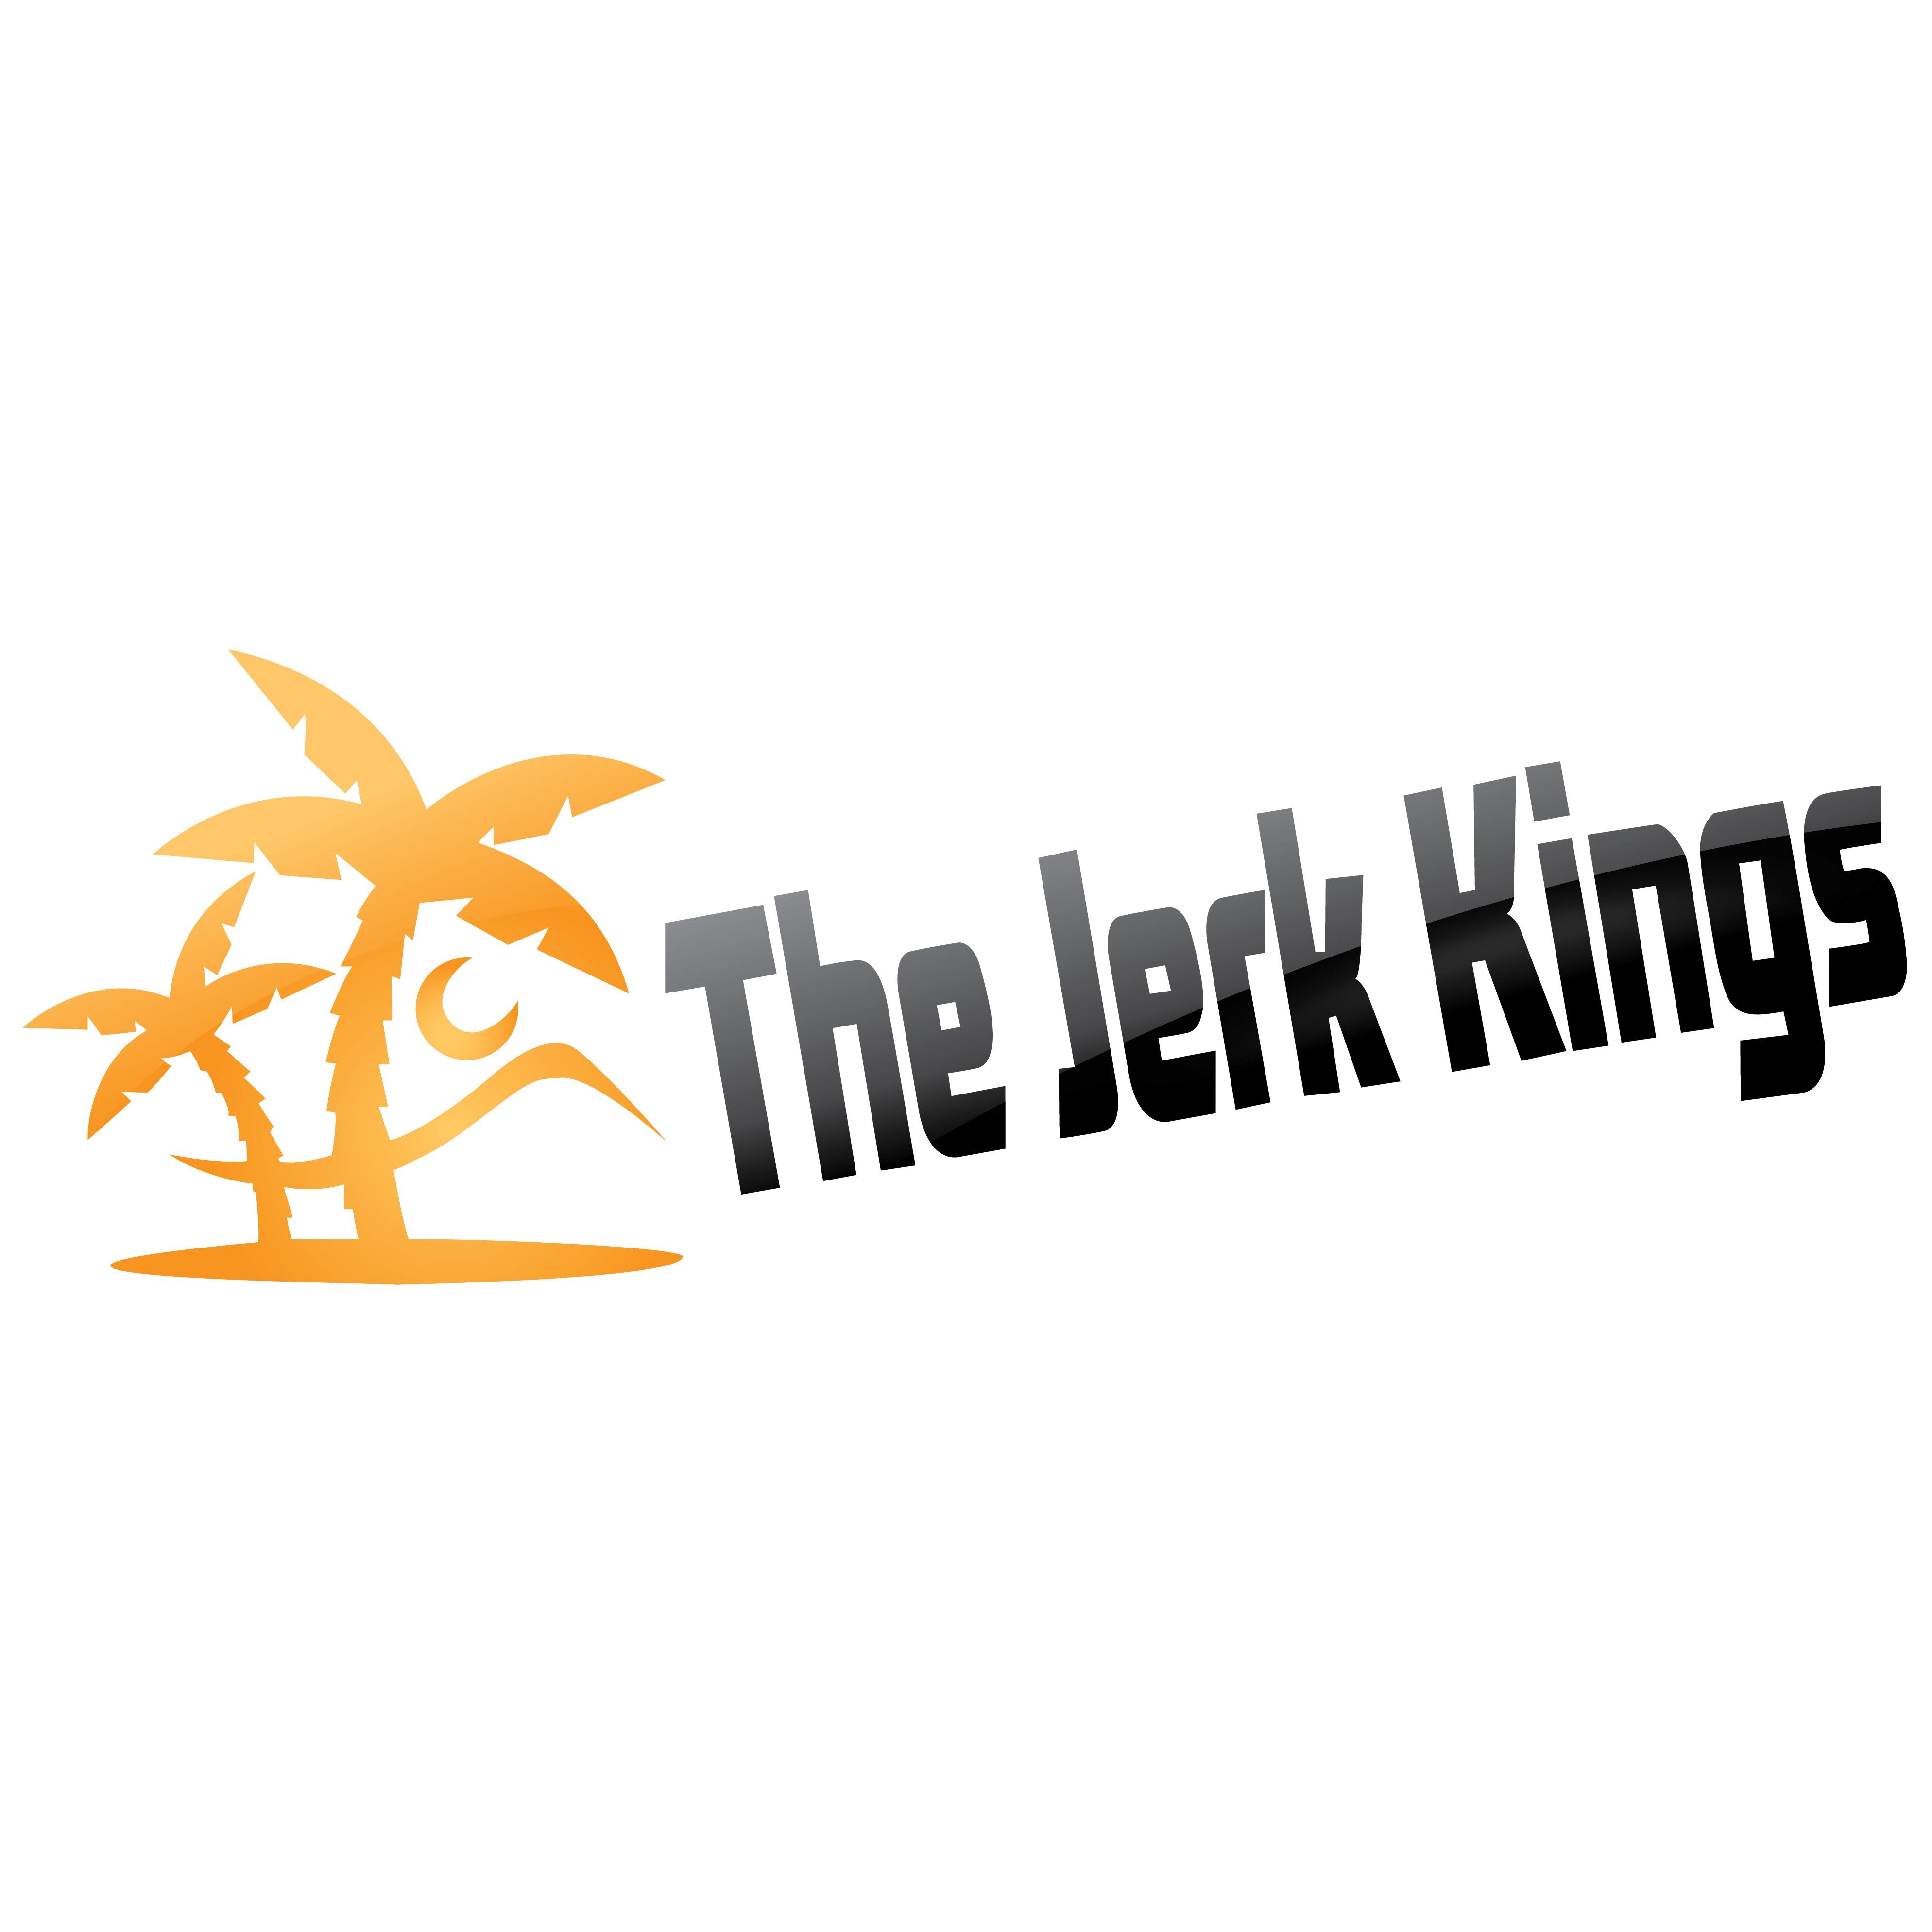 The Jerk Kings Logo